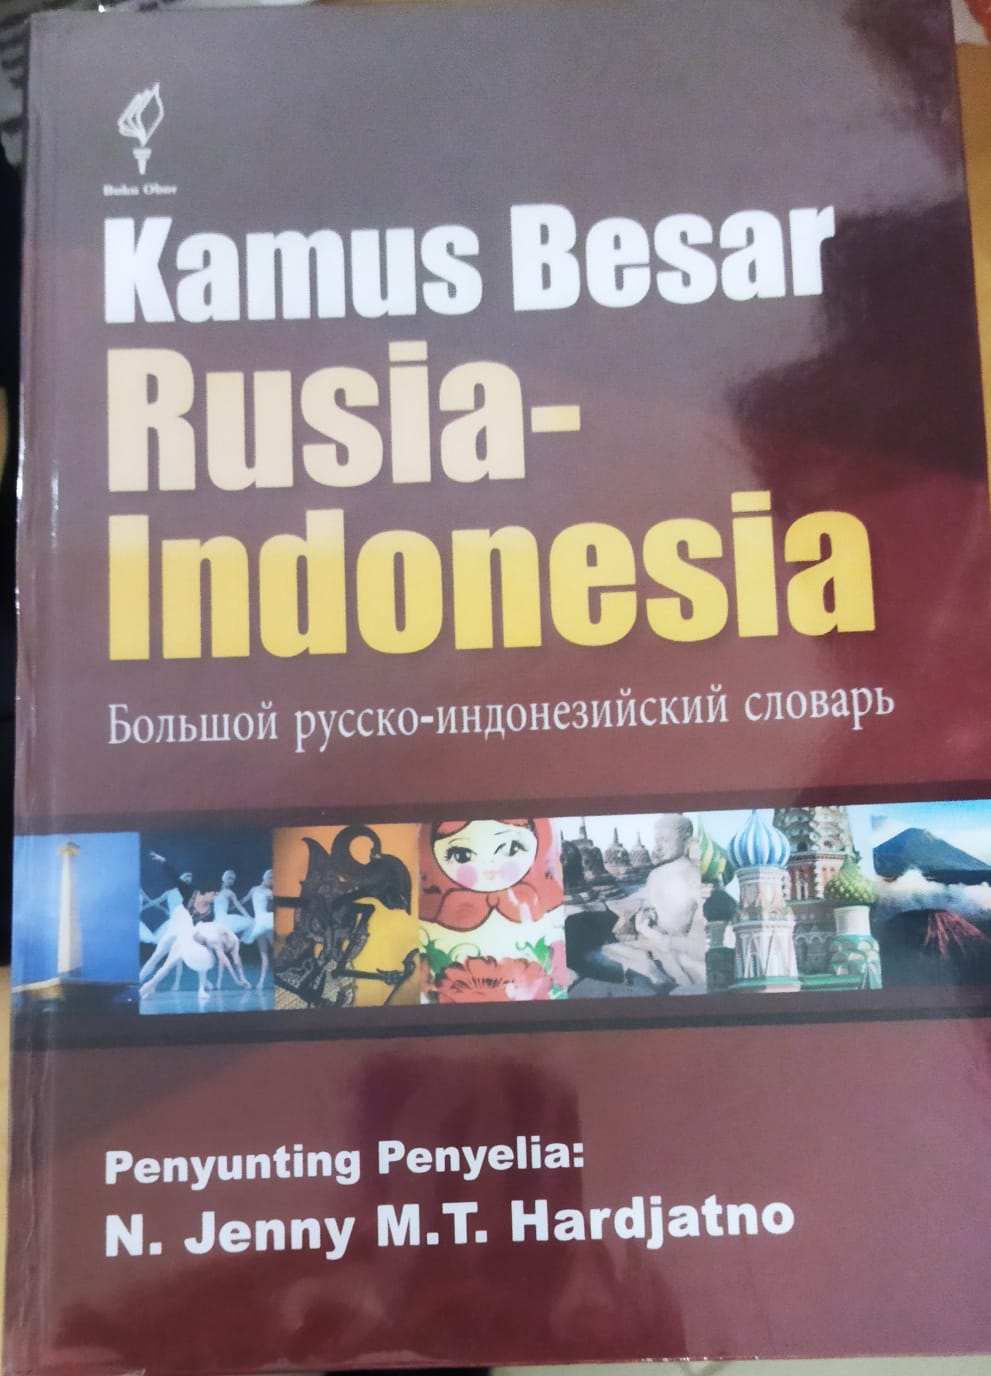 Kamus besar Rusia-Indonesia